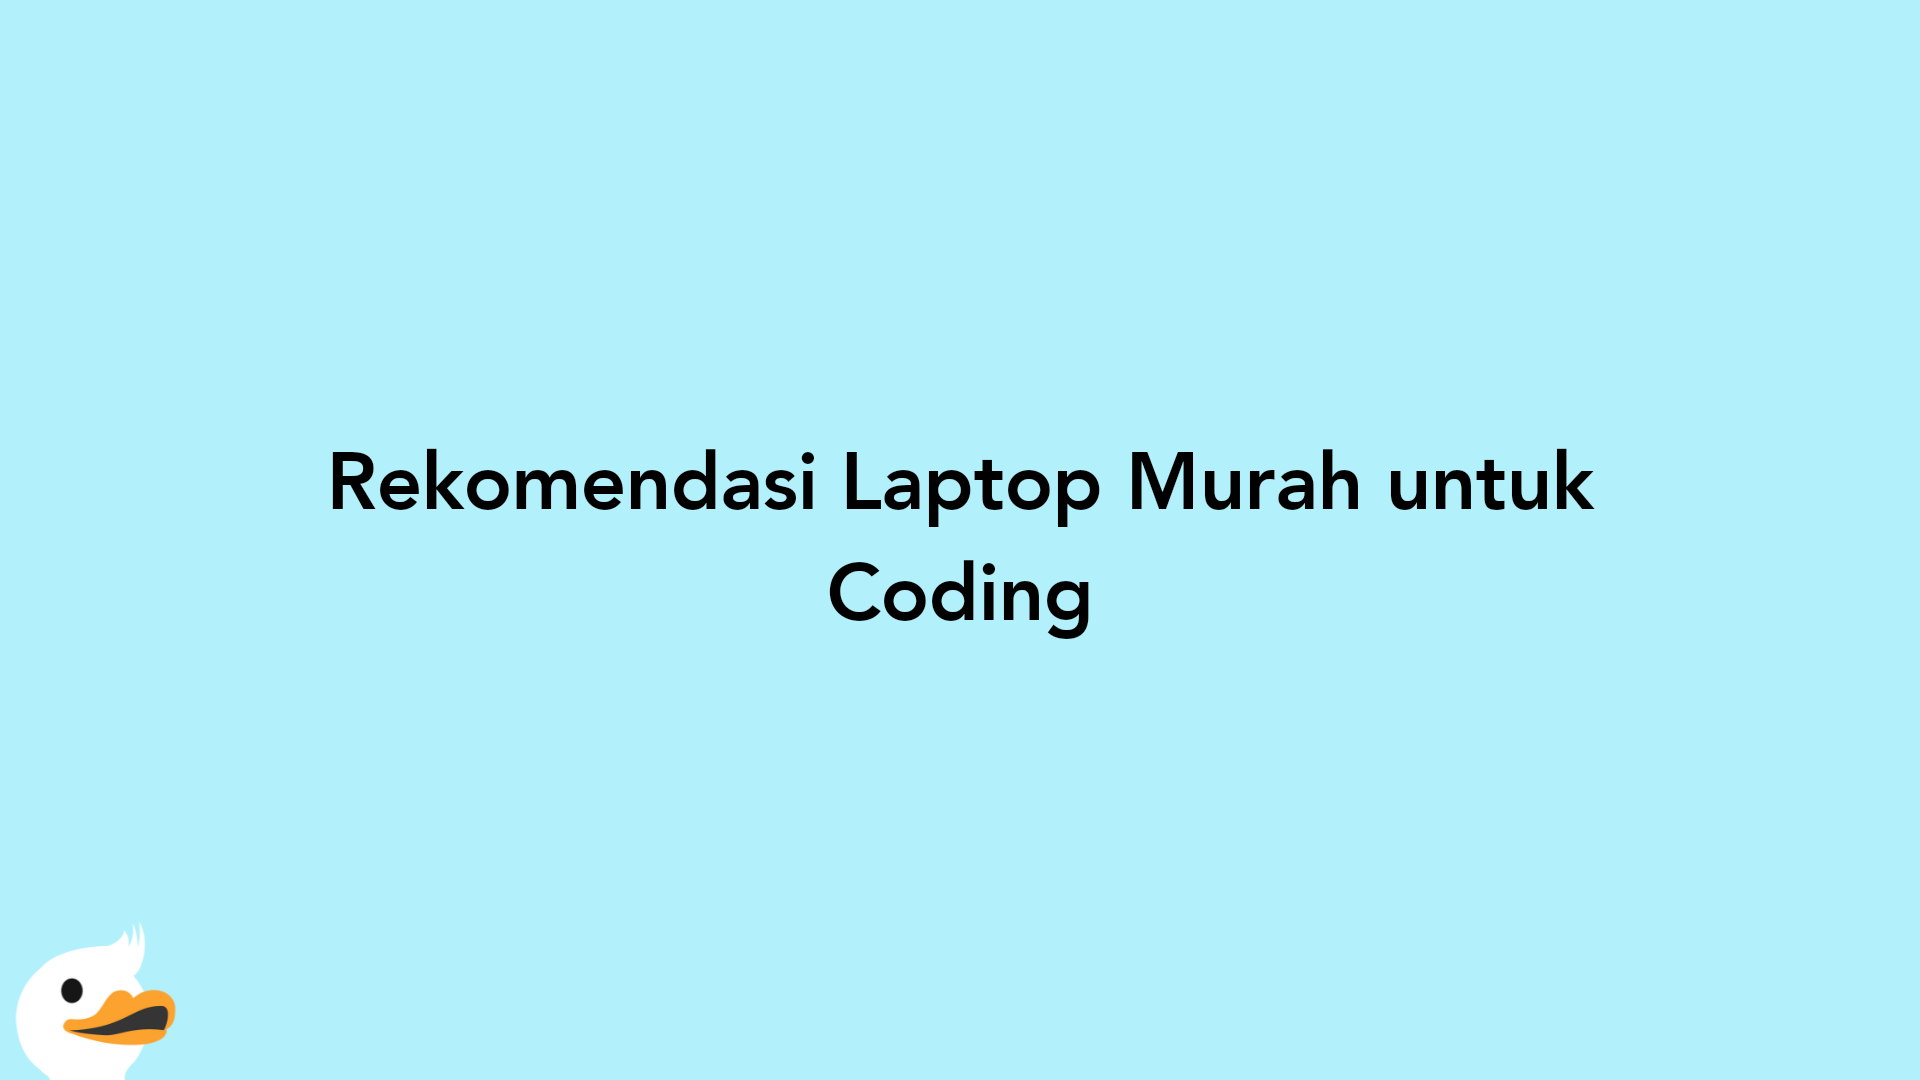 Rekomendasi Laptop Murah untuk Coding